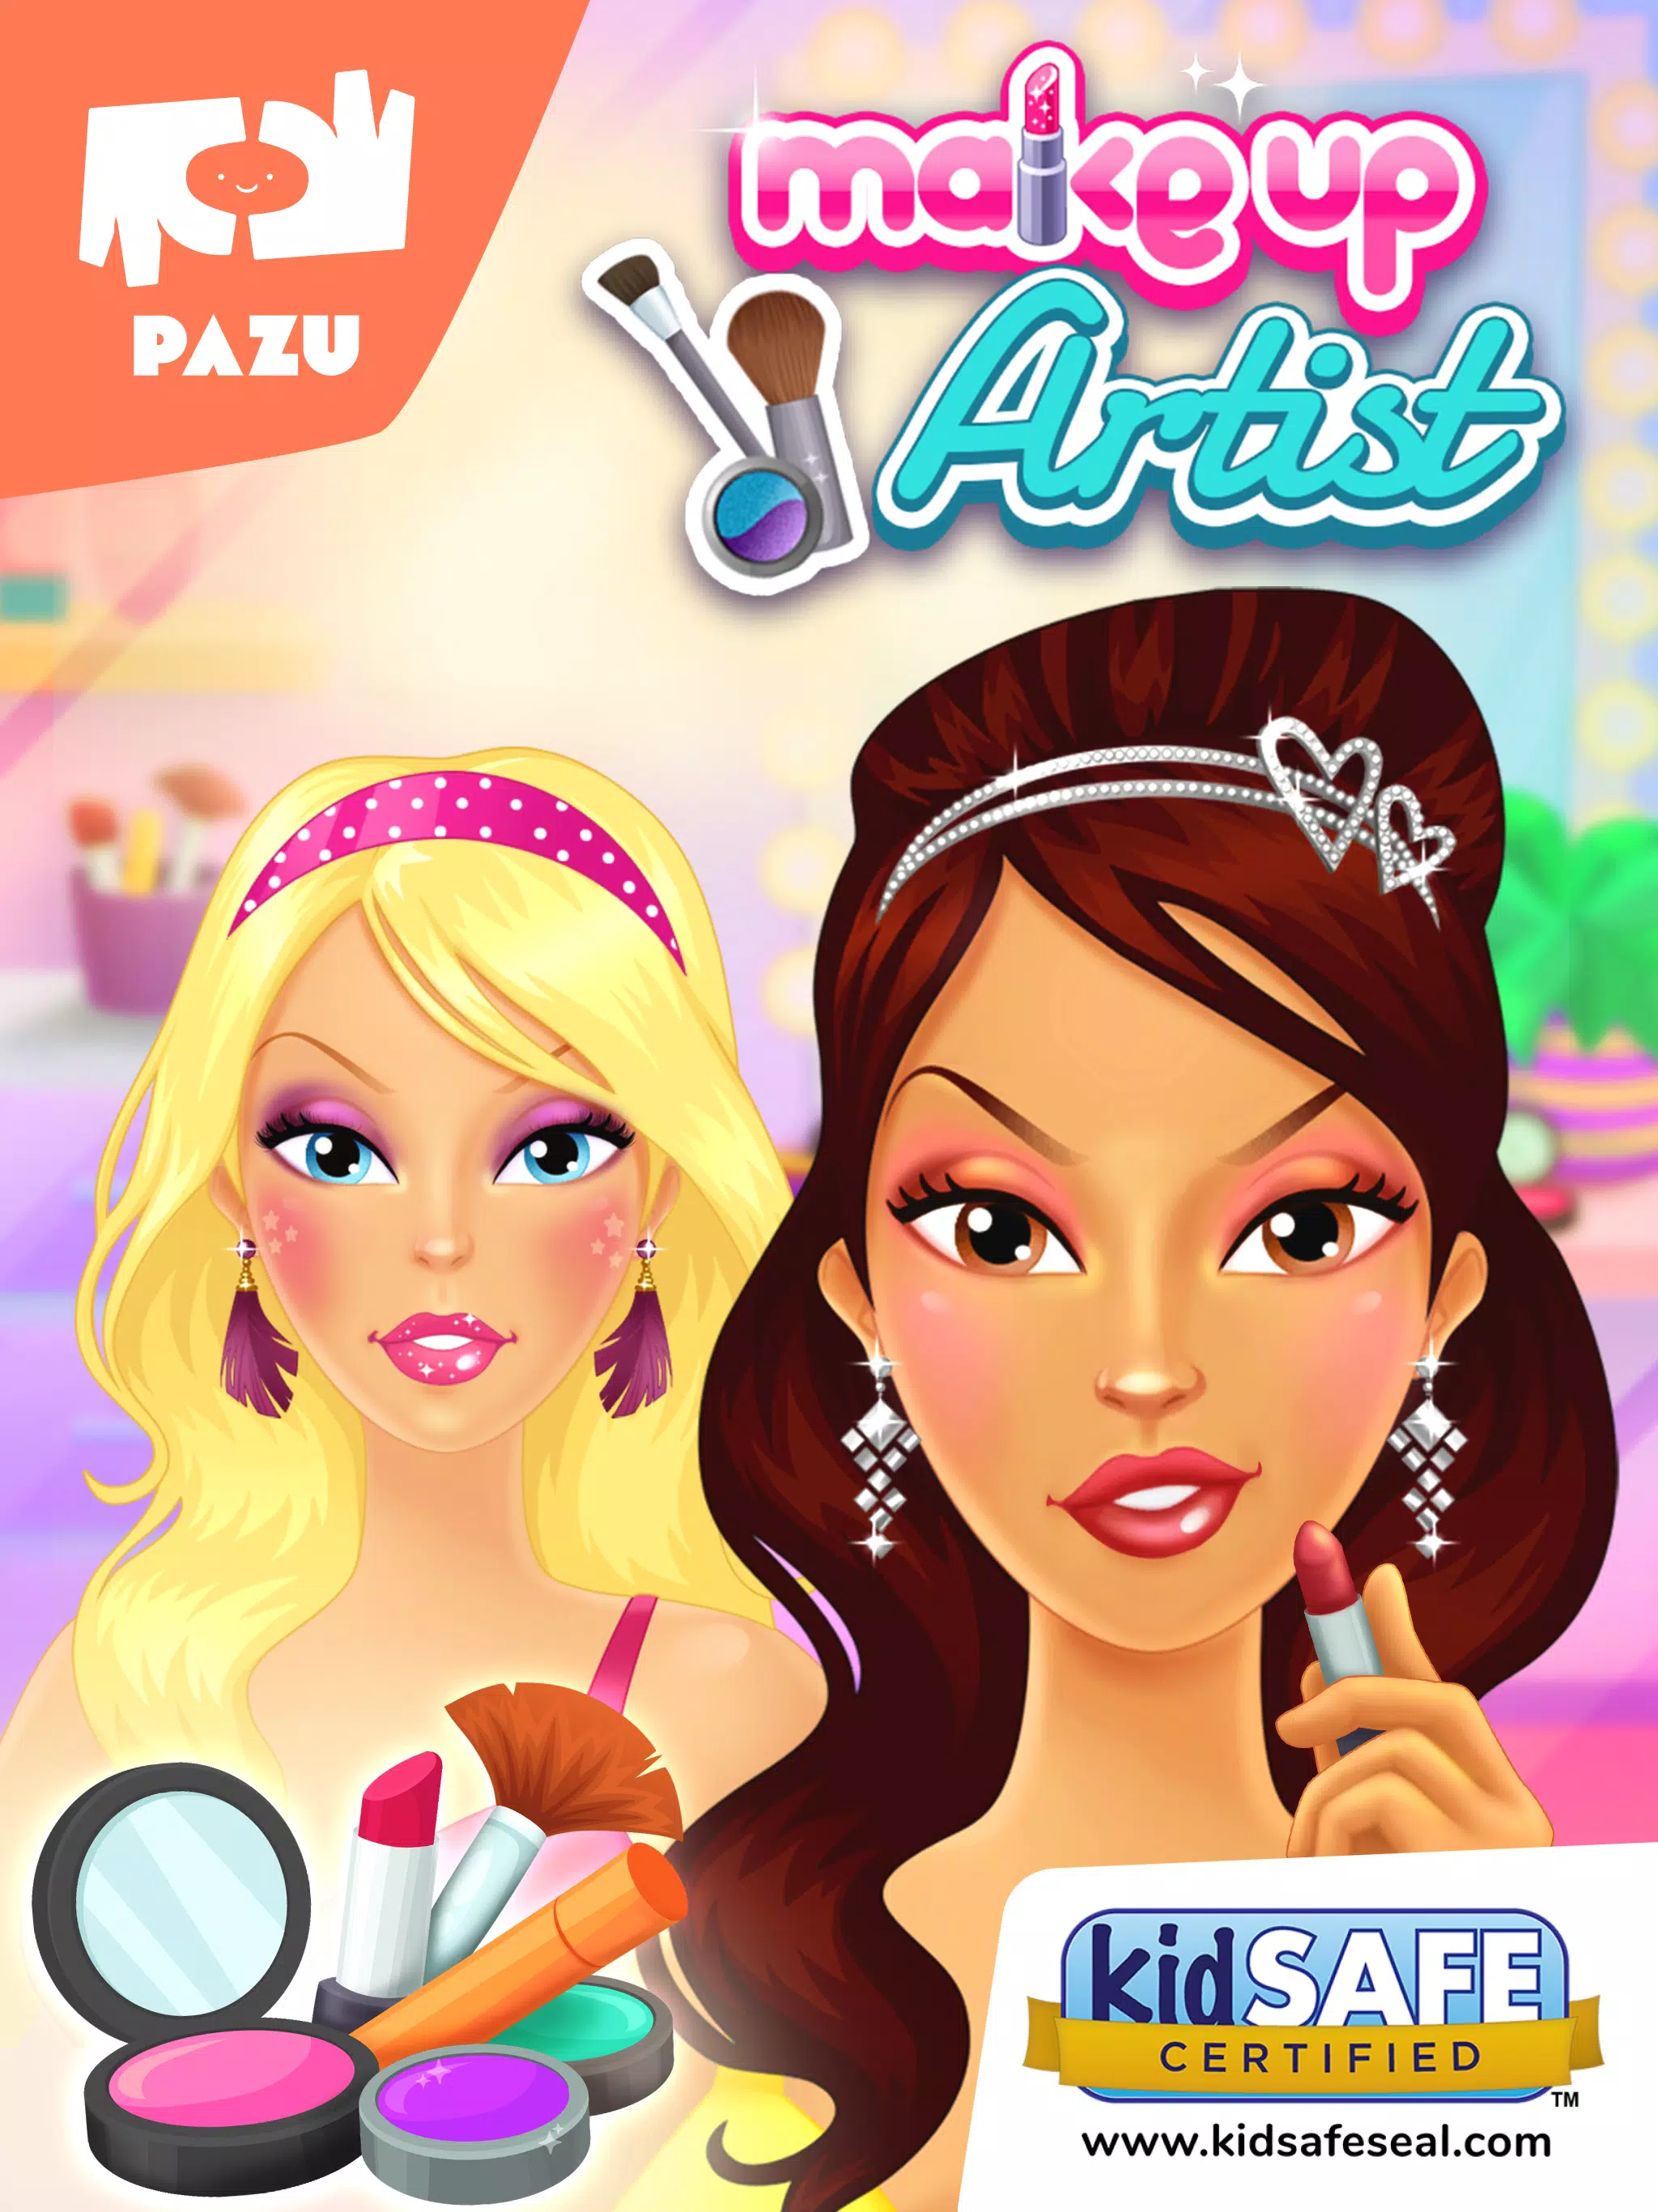 Maquiagem e salão de beleza para meninas : jogo de Spa para a menina e as  crianças ! GRATUITO::Appstore for Android